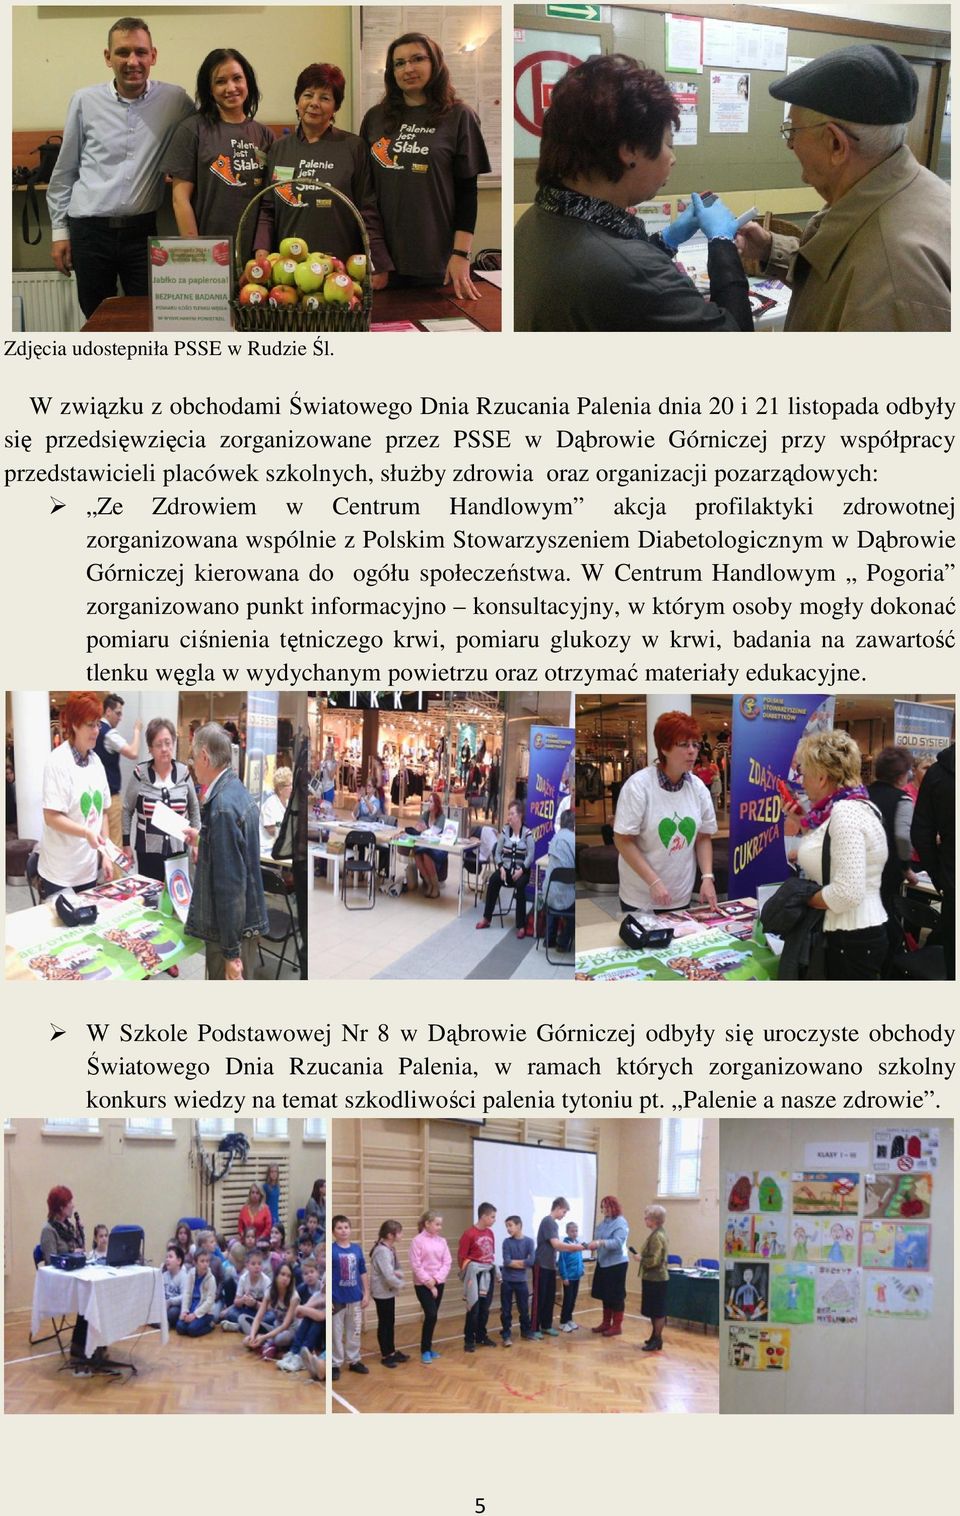 szkolnych, służby zdrowia oraz organizacji pozarządowych: Ze Zdrowiem w Centrum Handlowym akcja profilaktyki zdrowotnej zorganizowana wspólnie z Polskim Stowarzyszeniem Diabetologicznym w Dąbrowie